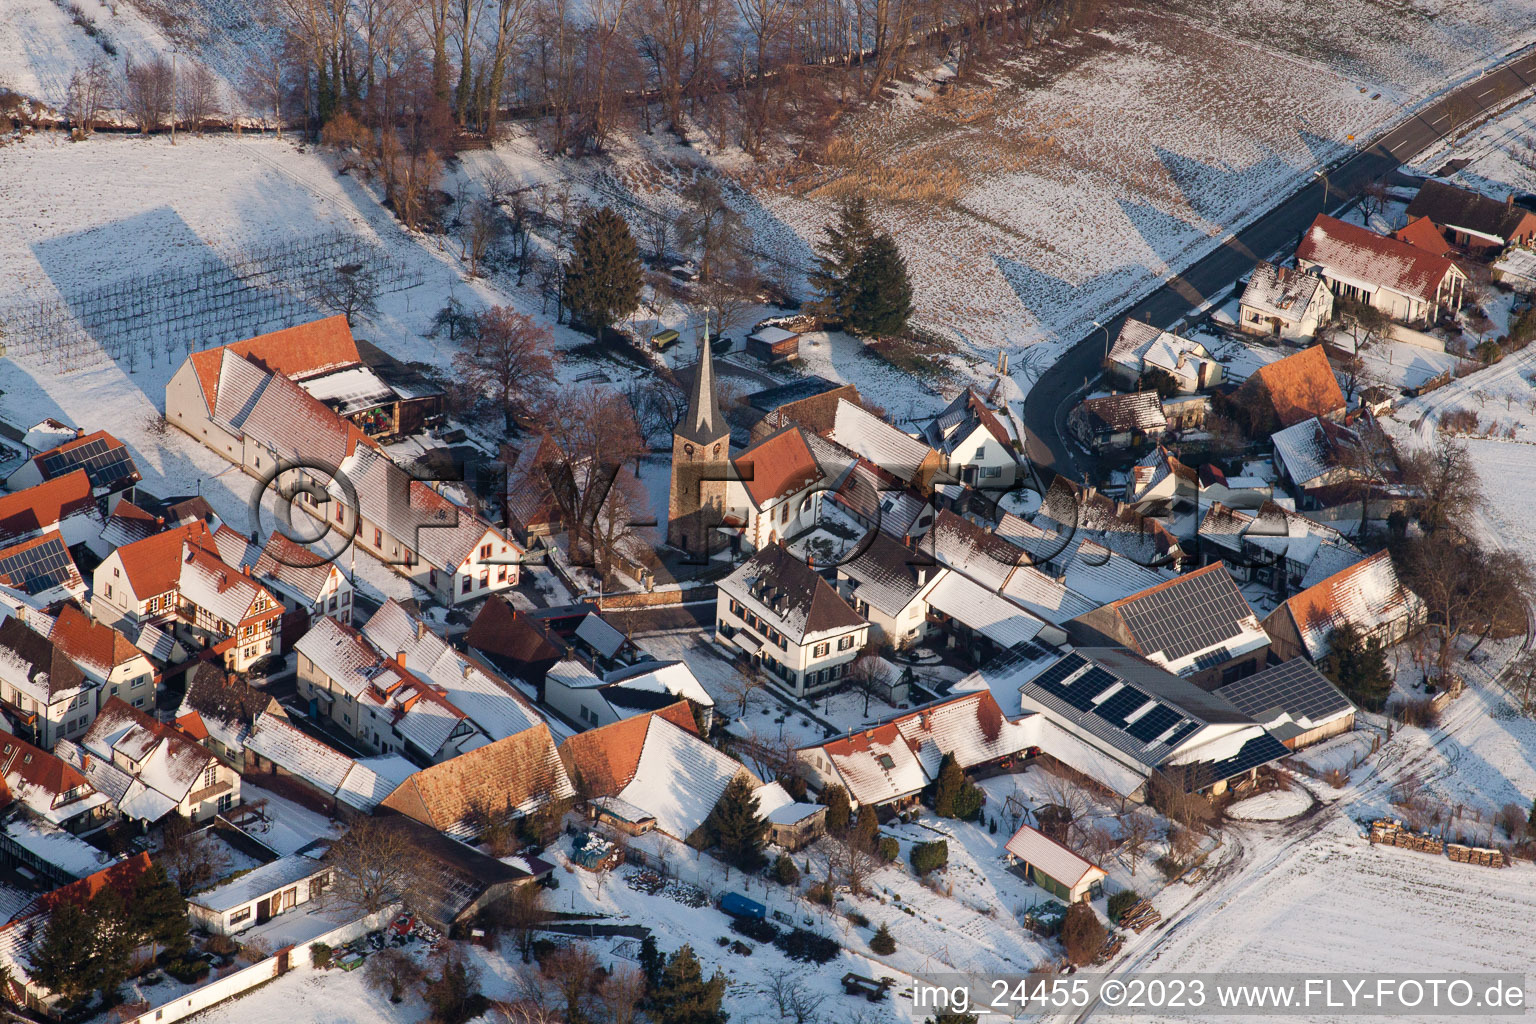 Aerial view of Church in winter in the district Klingen in Heuchelheim-Klingen in the state Rhineland-Palatinate, Germany